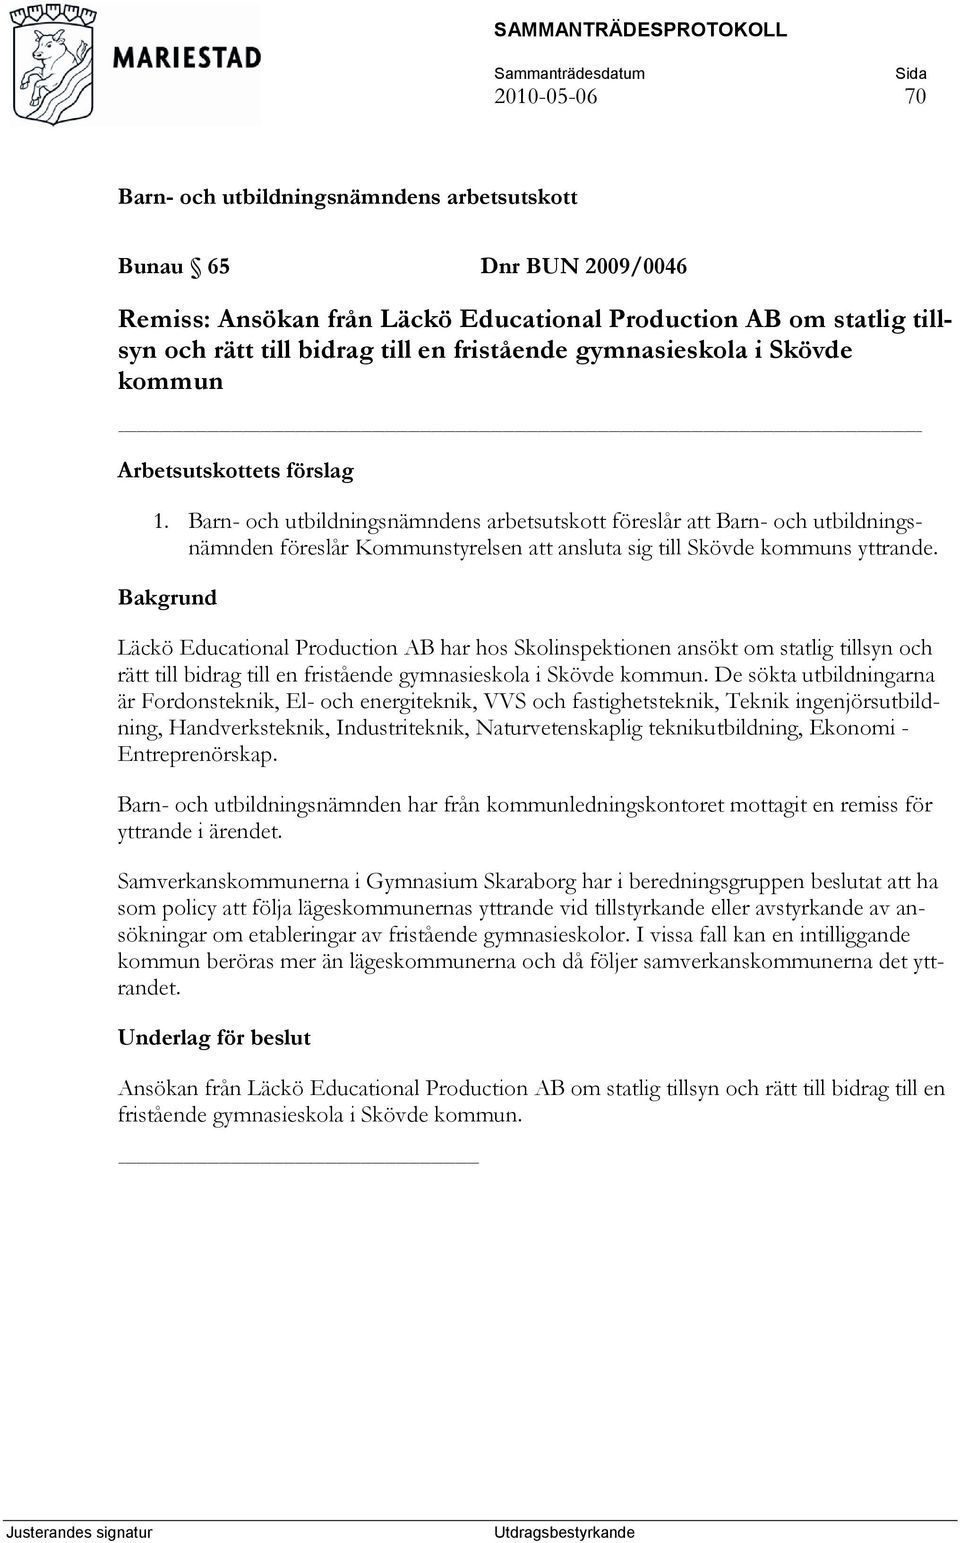 Läckö Educational Production AB har hos Skolinspektionen ansökt om statlig tillsyn och rätt till bidrag till en fristående gymnasieskola i Skövde kommun.